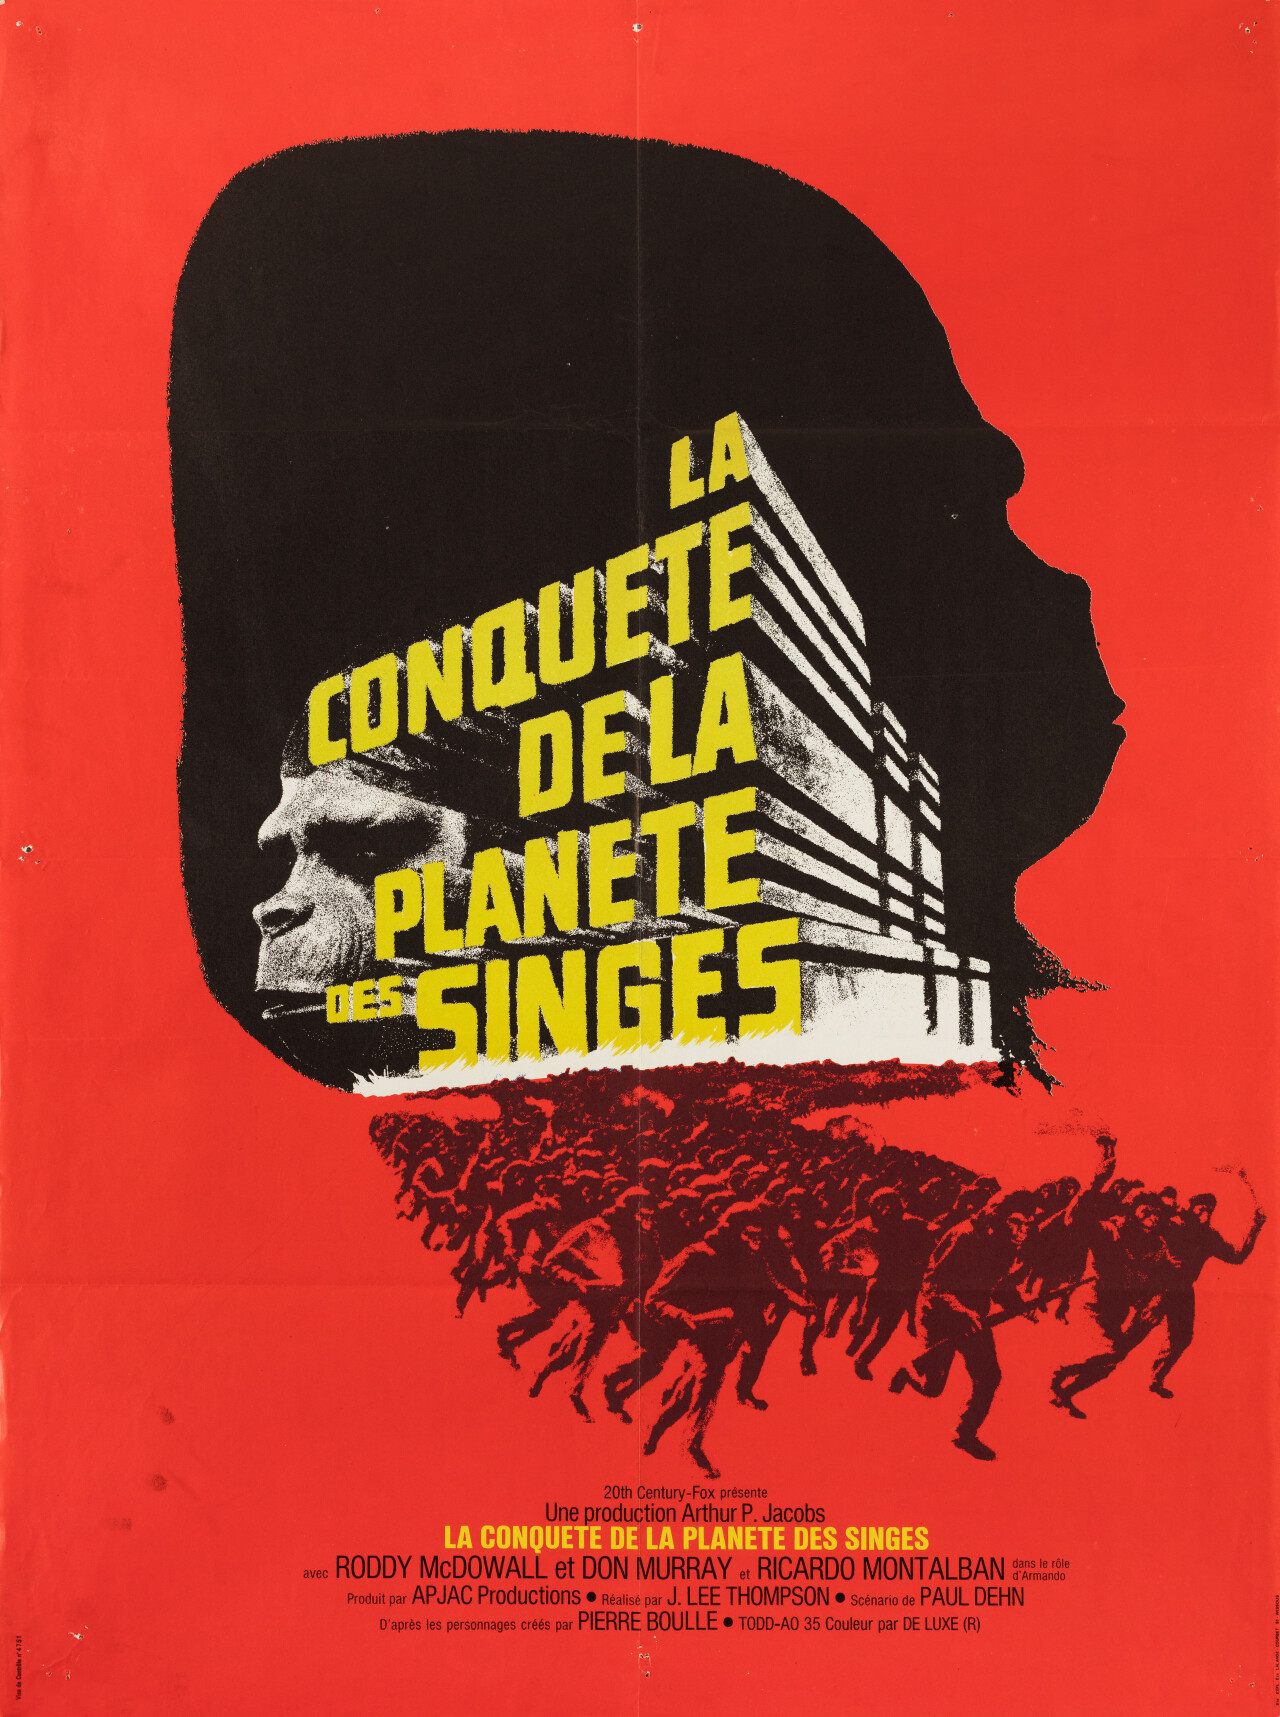 Завоевание планеты обезьян (Conquest of the Planet of the Apes, 1972), режиссёр Дж. Ли Томпсон, французский постер к фильму (графический дизайн, 1972 год)